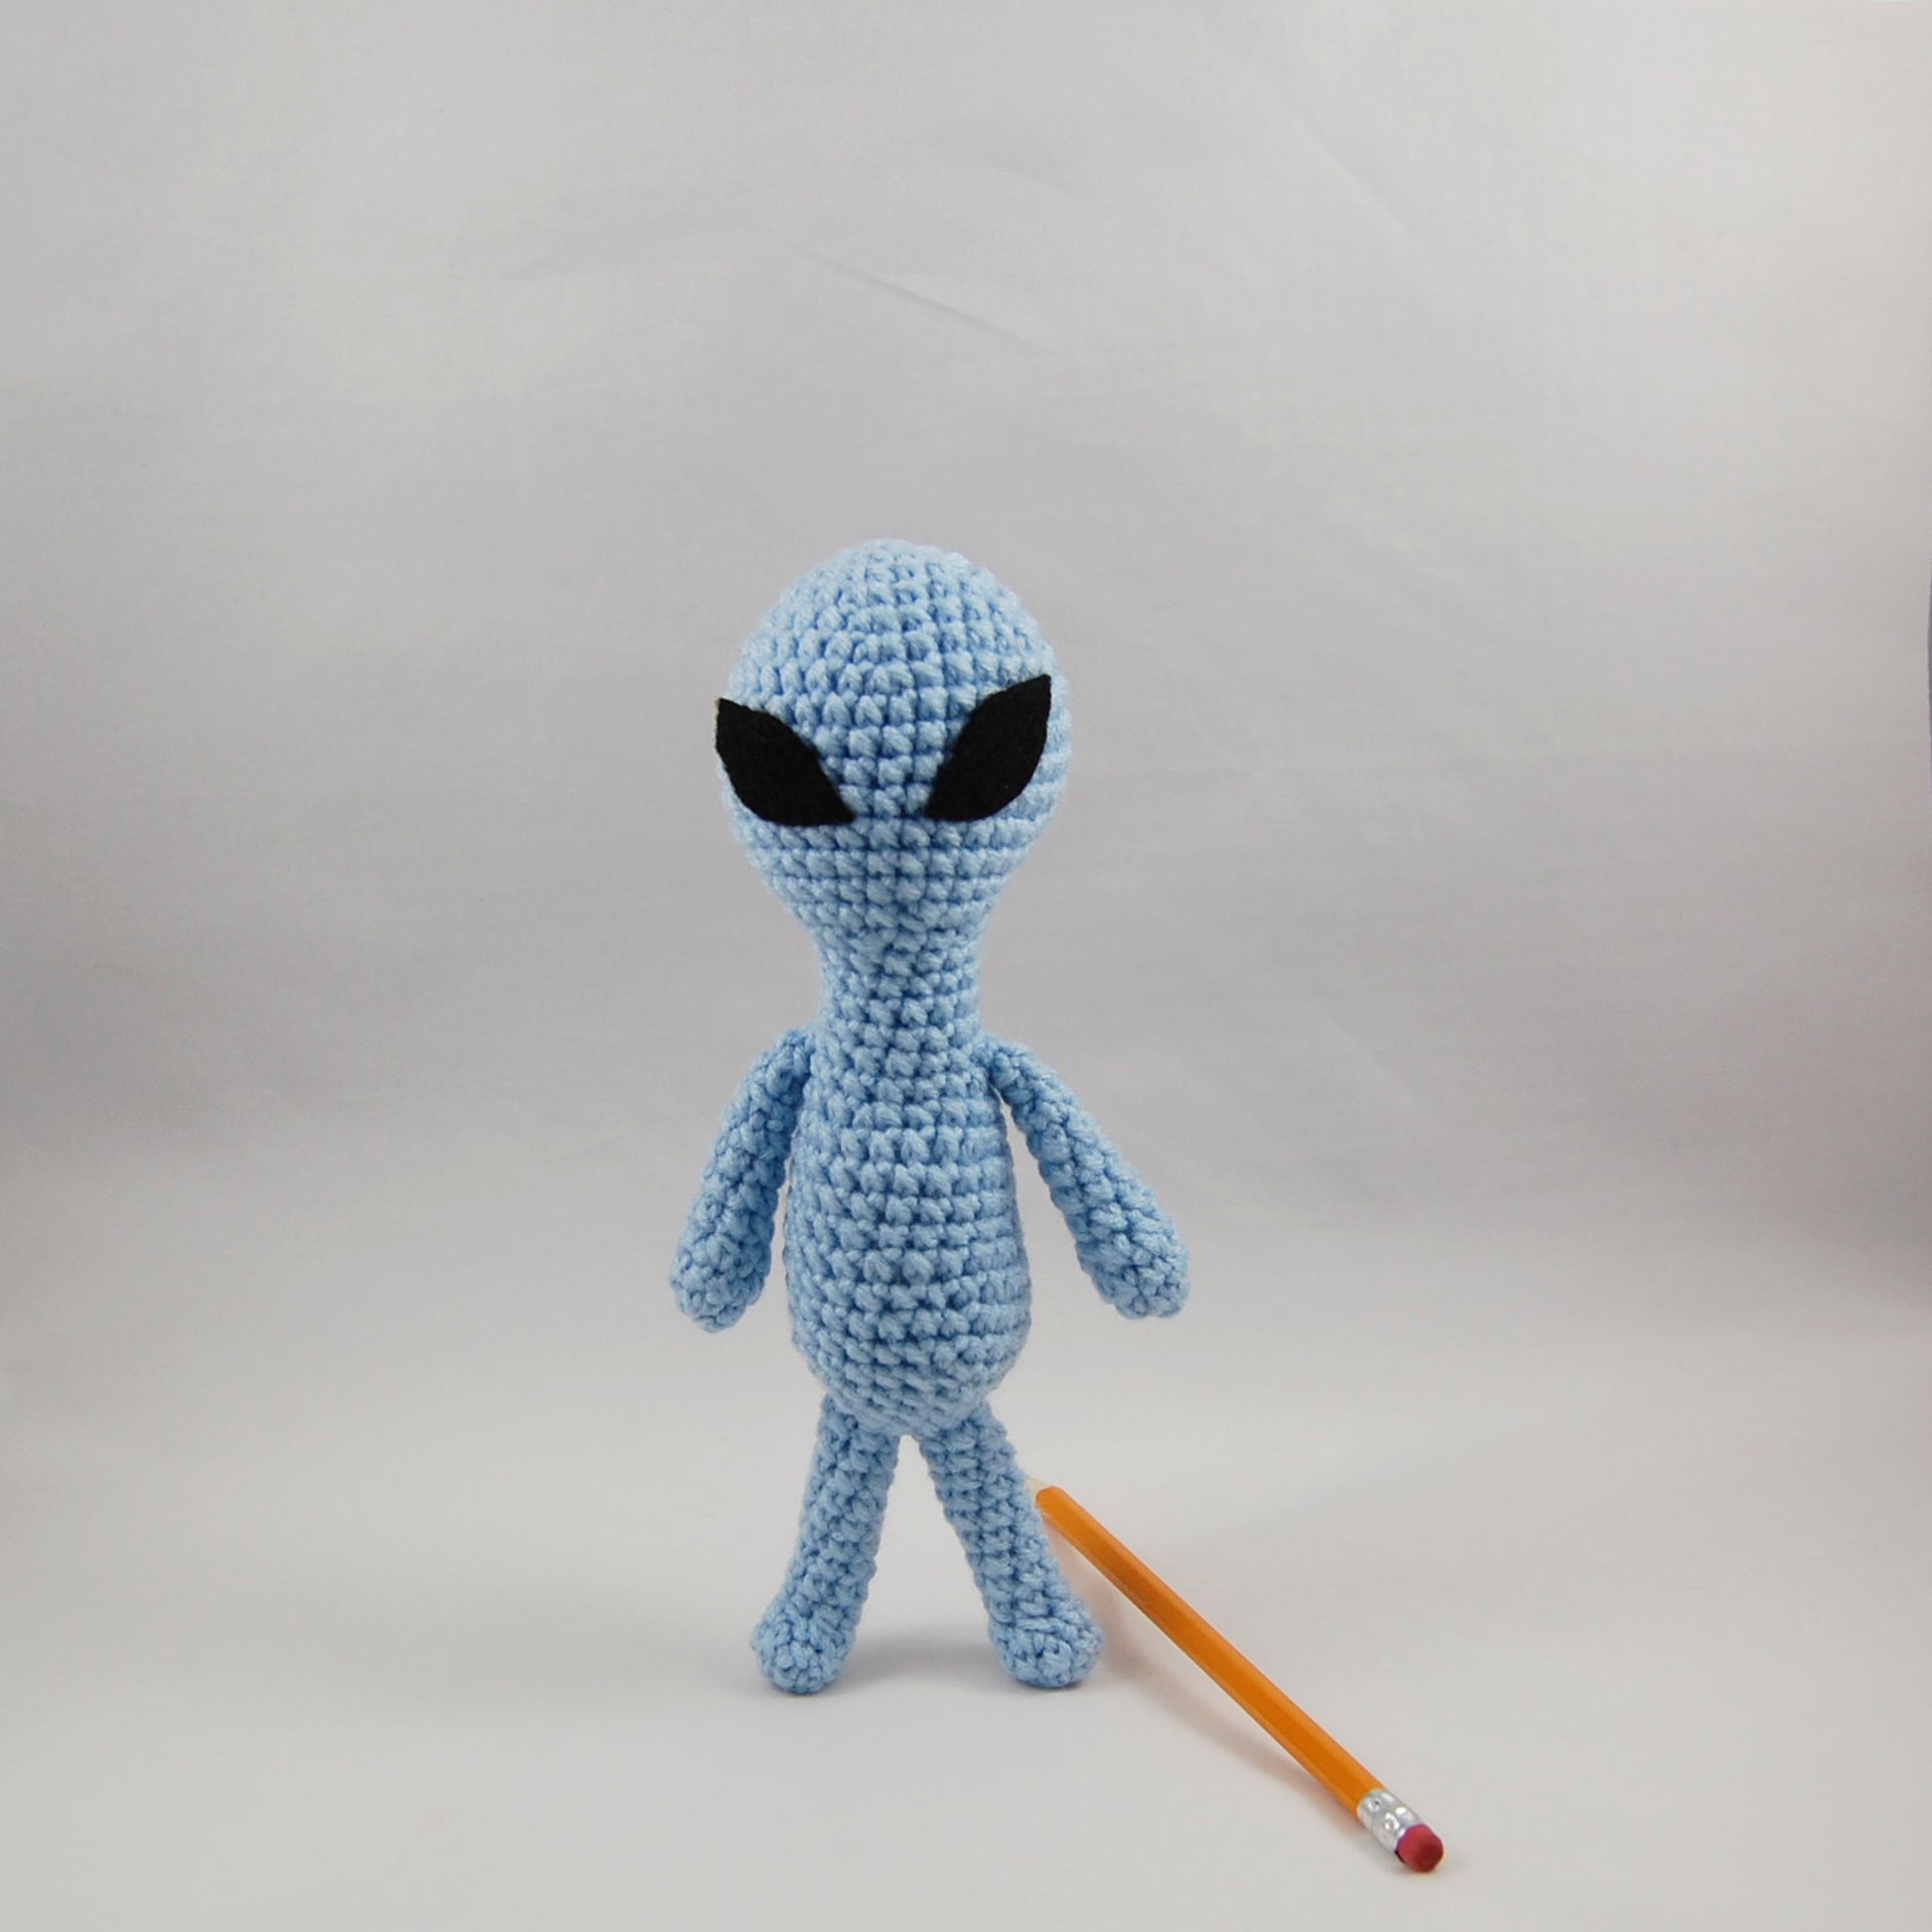 alien toy beside pencil